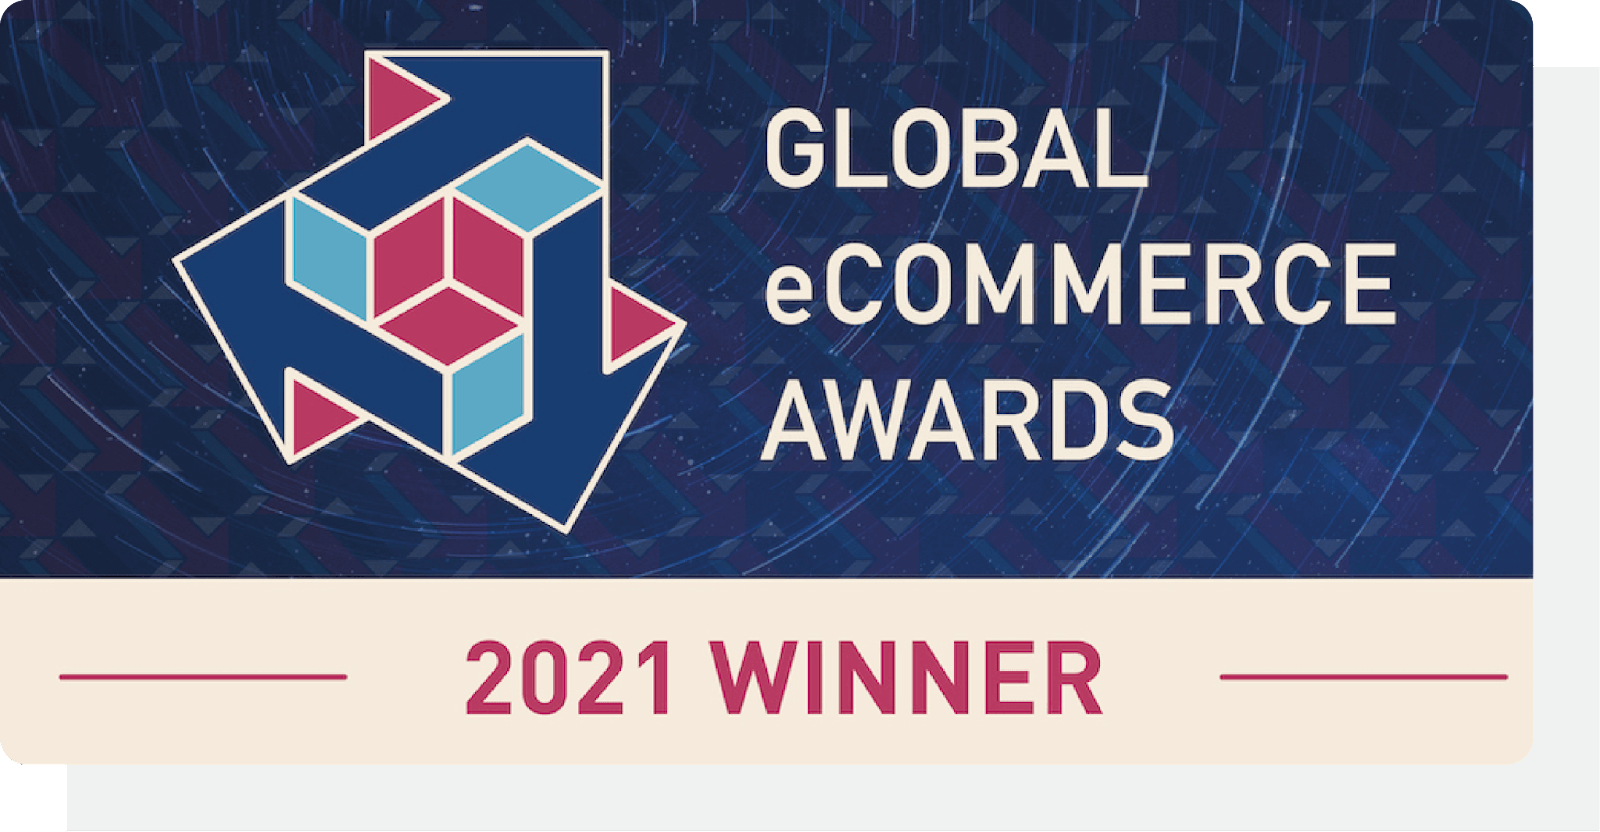 Global Ecommerce Awards Winner